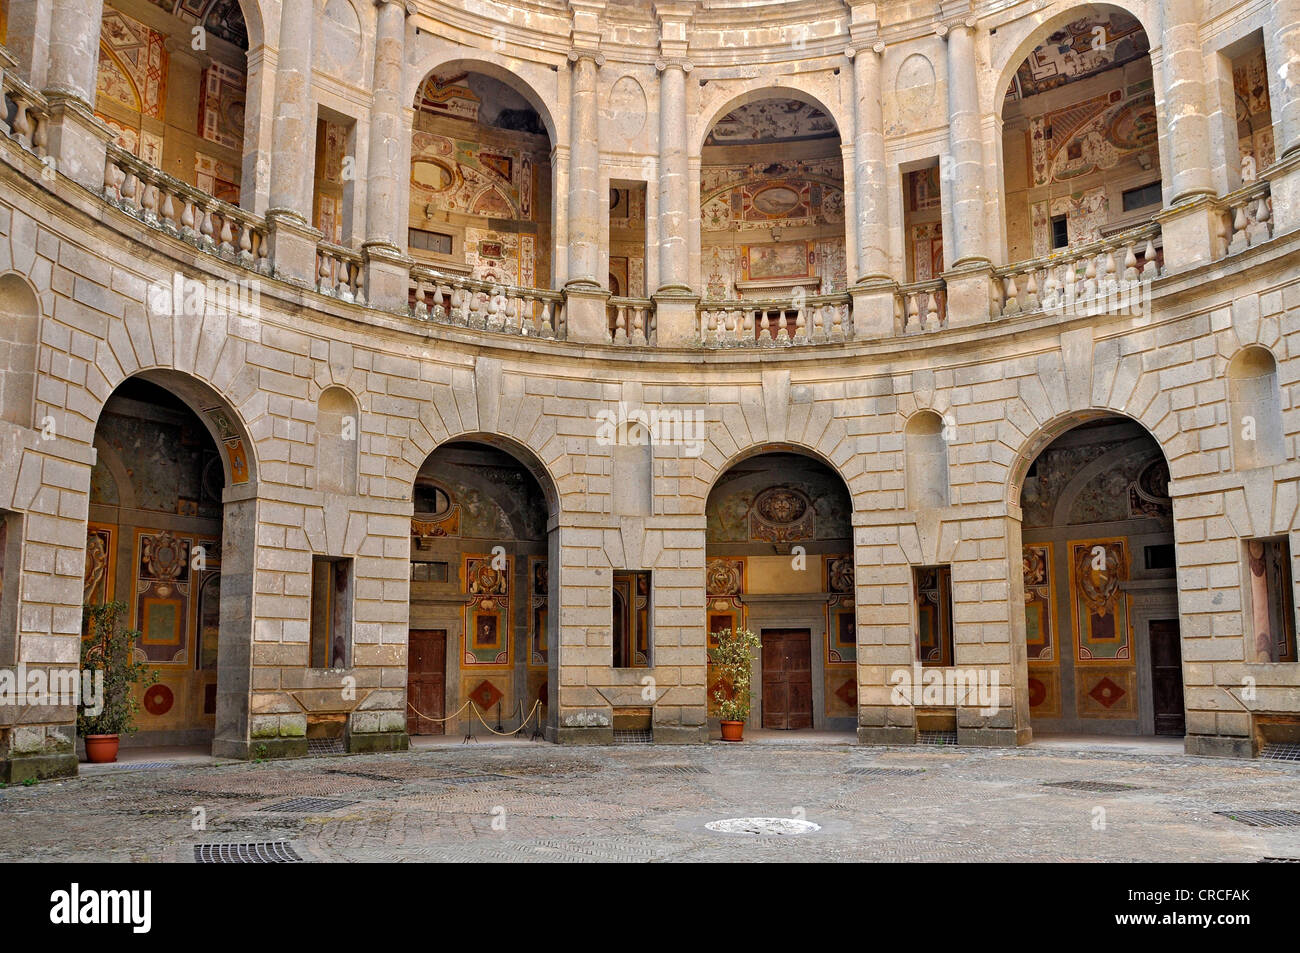 Innenhof mit Arkaden, Palazzo in Fortezza, Palast, Villa Farnese, Caprarola, Latium Region, Italien, Europa Stockfoto